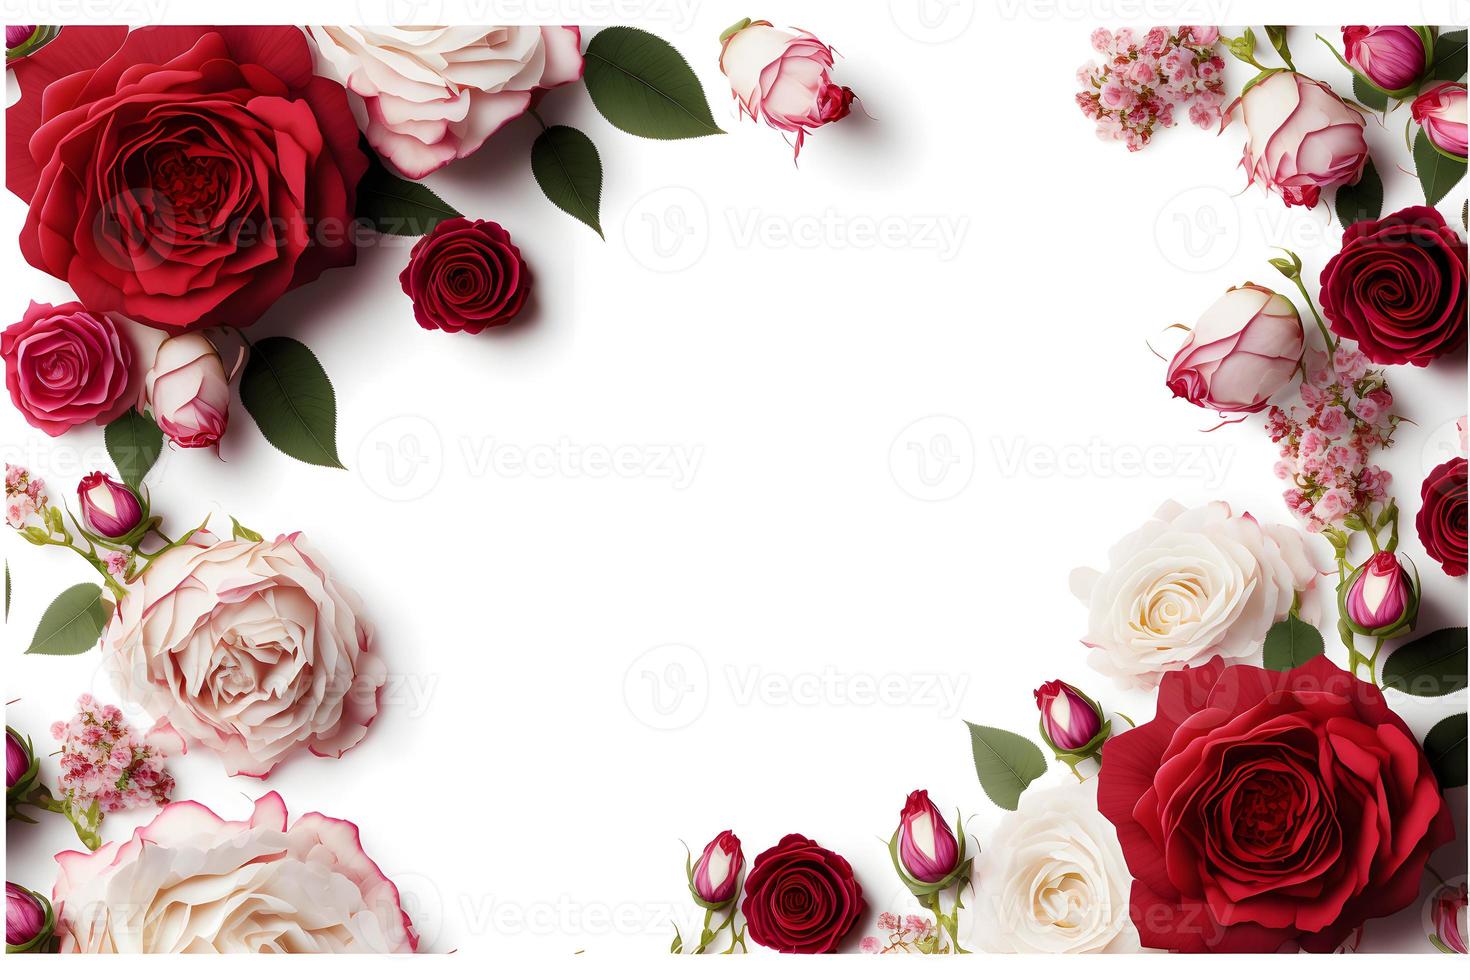 una imagen deslumbrante que presenta una flor rosa roja y rosa con un espacio en blanco en el medio, perfecta para agregar texto o superponer gráficos. esta foto es ideal para usar en redes sociales, sitios web